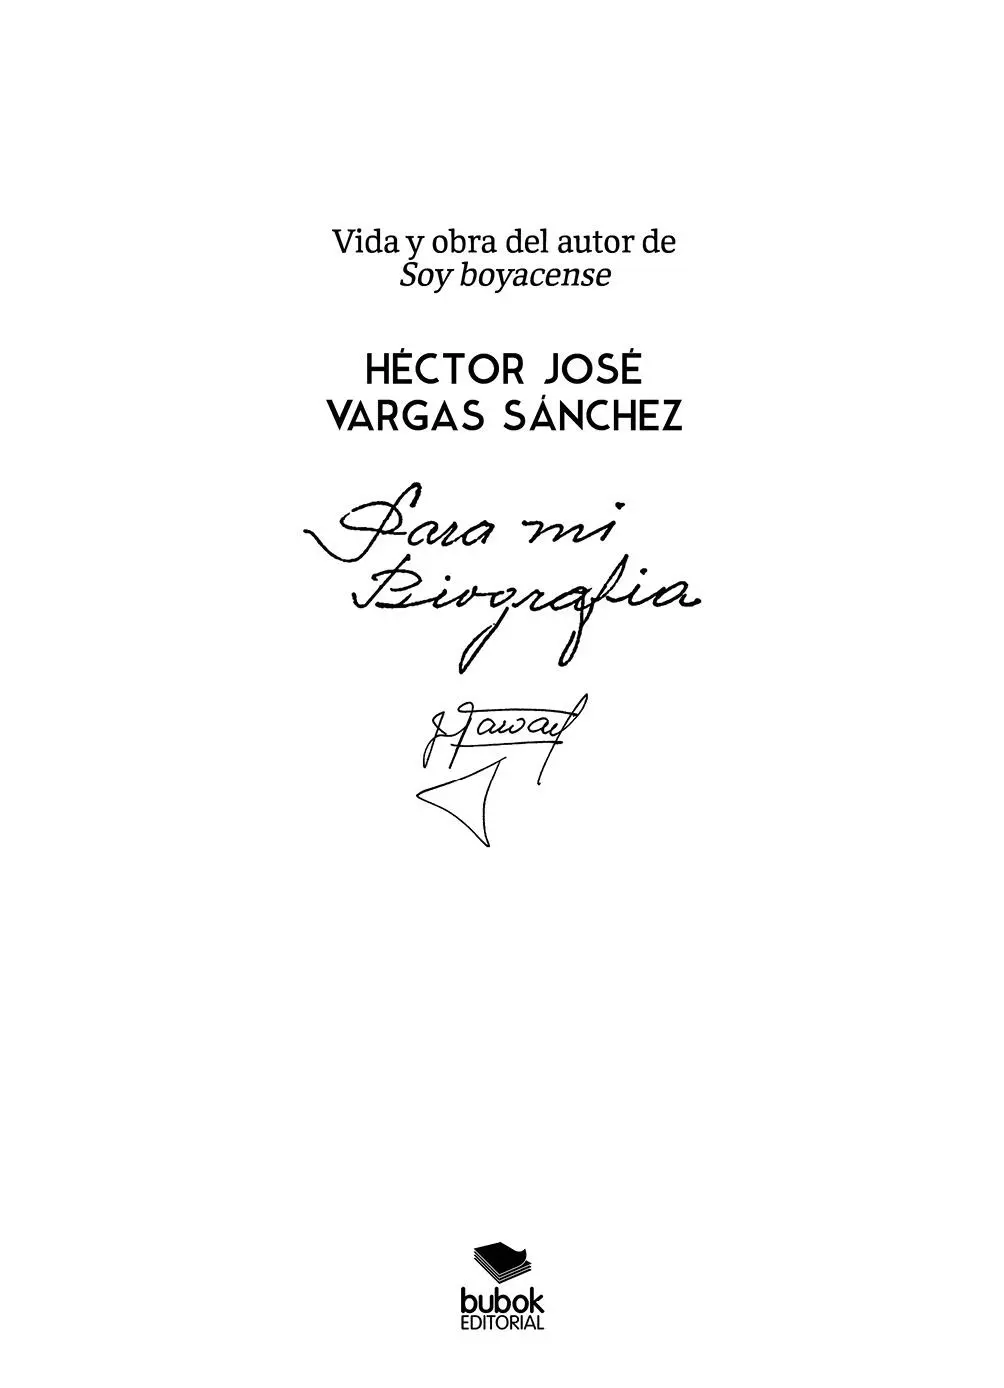 Héctor José Vargas Sánchez Para mi Biografía Vida y obra del autor de Soy - фото 1